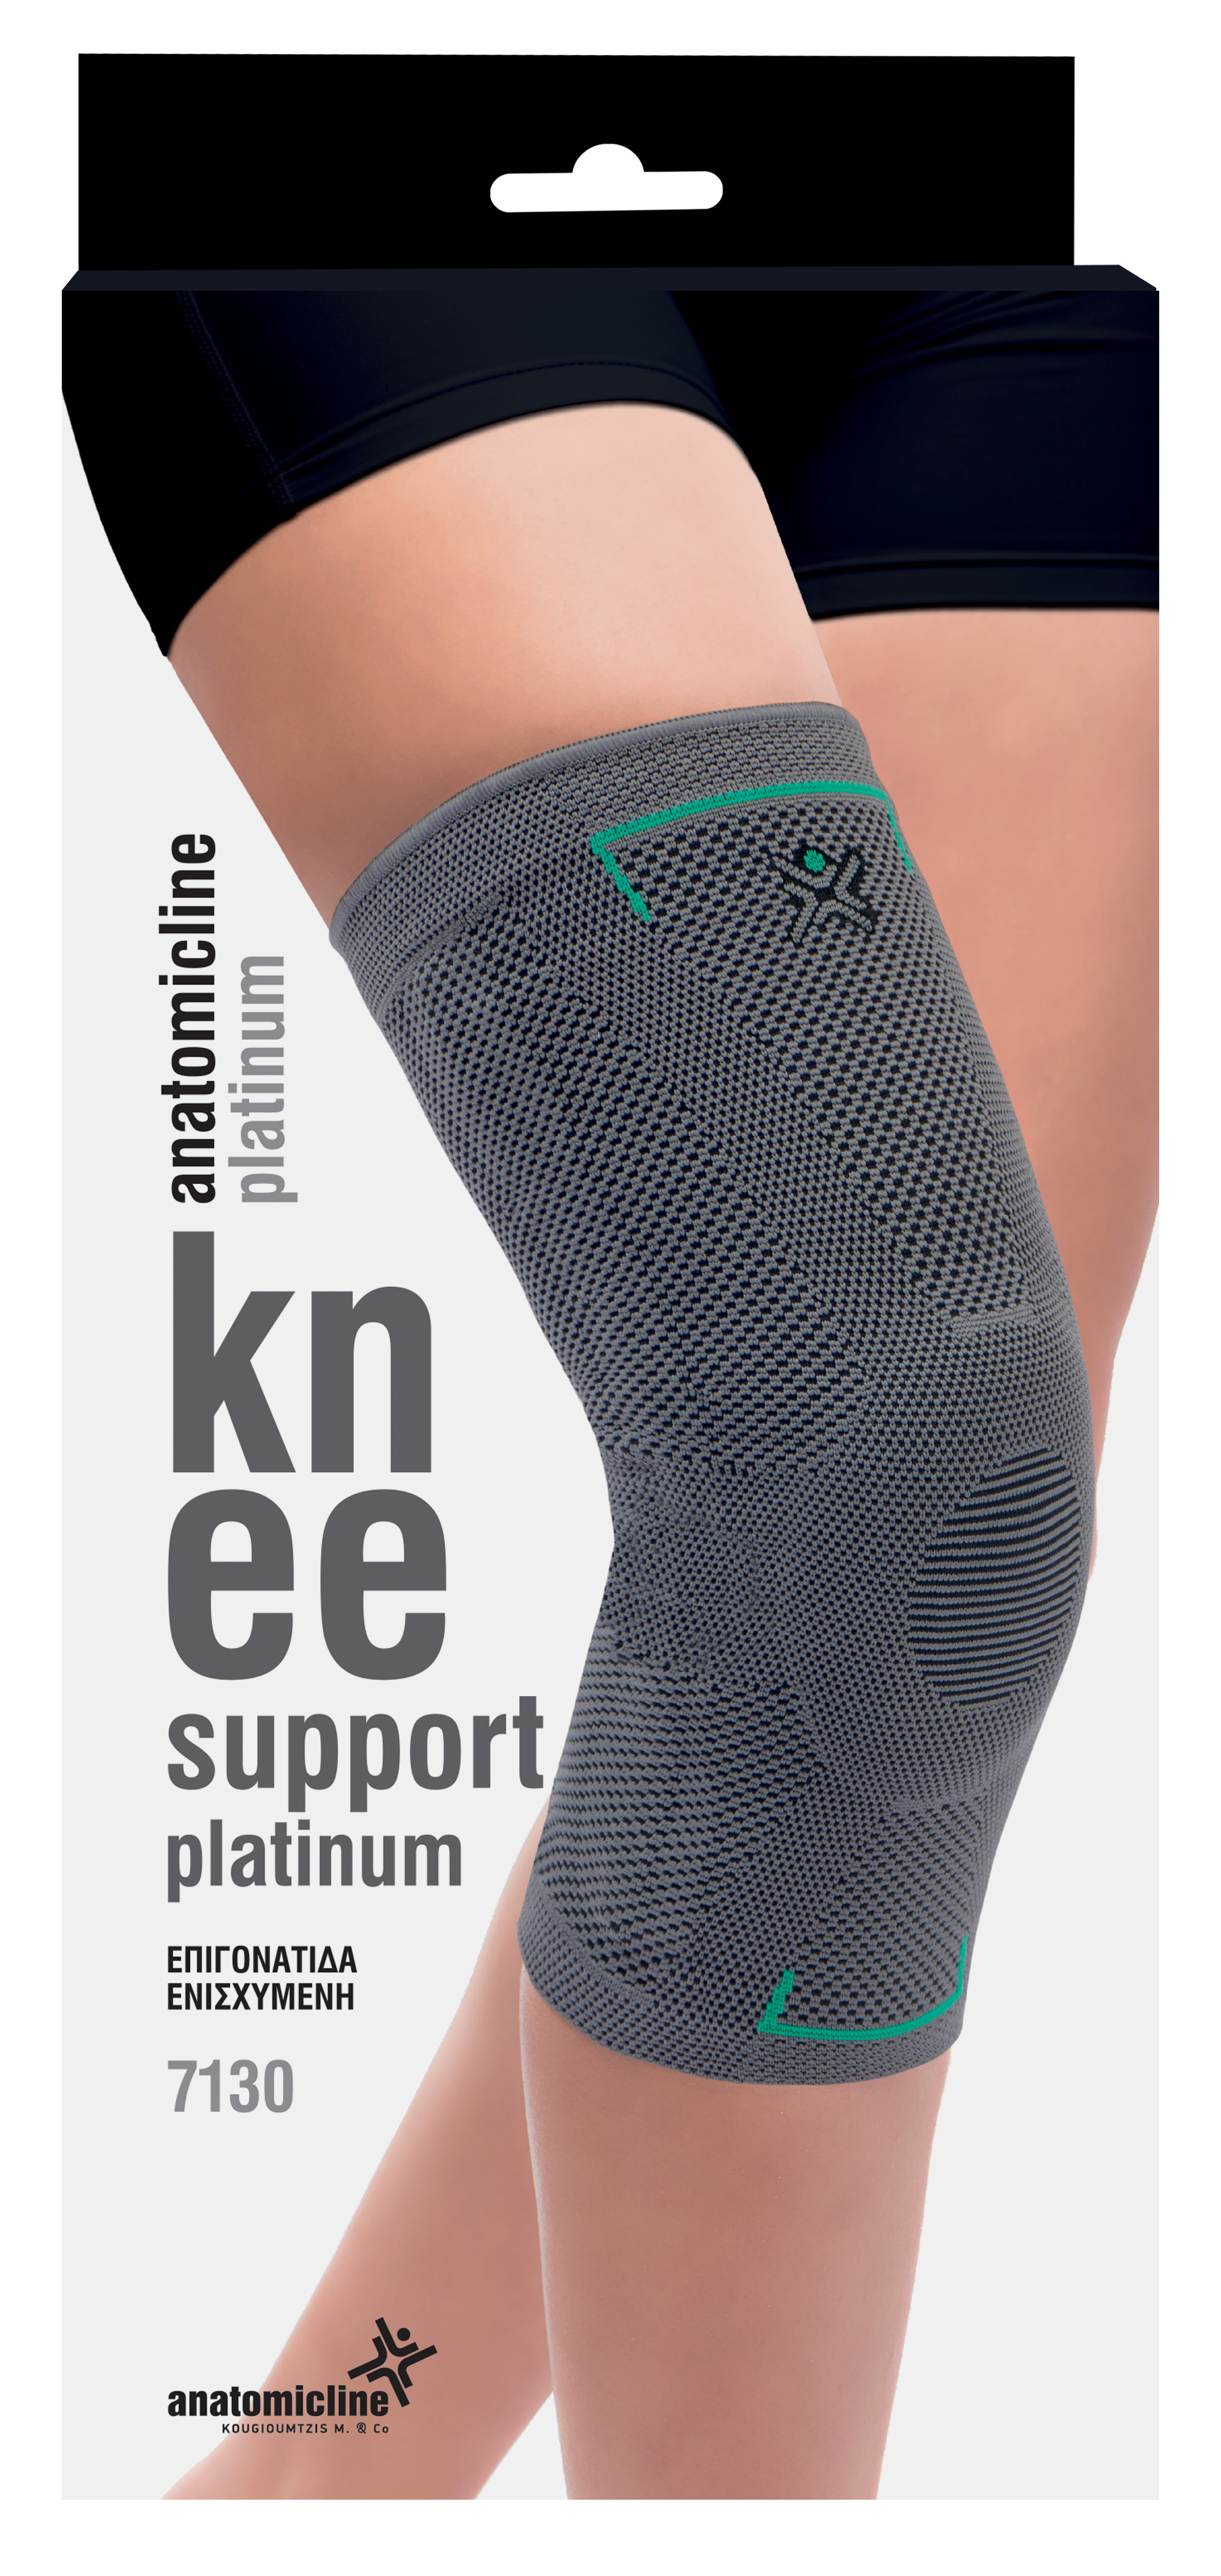 Knee Support Platinum 7130